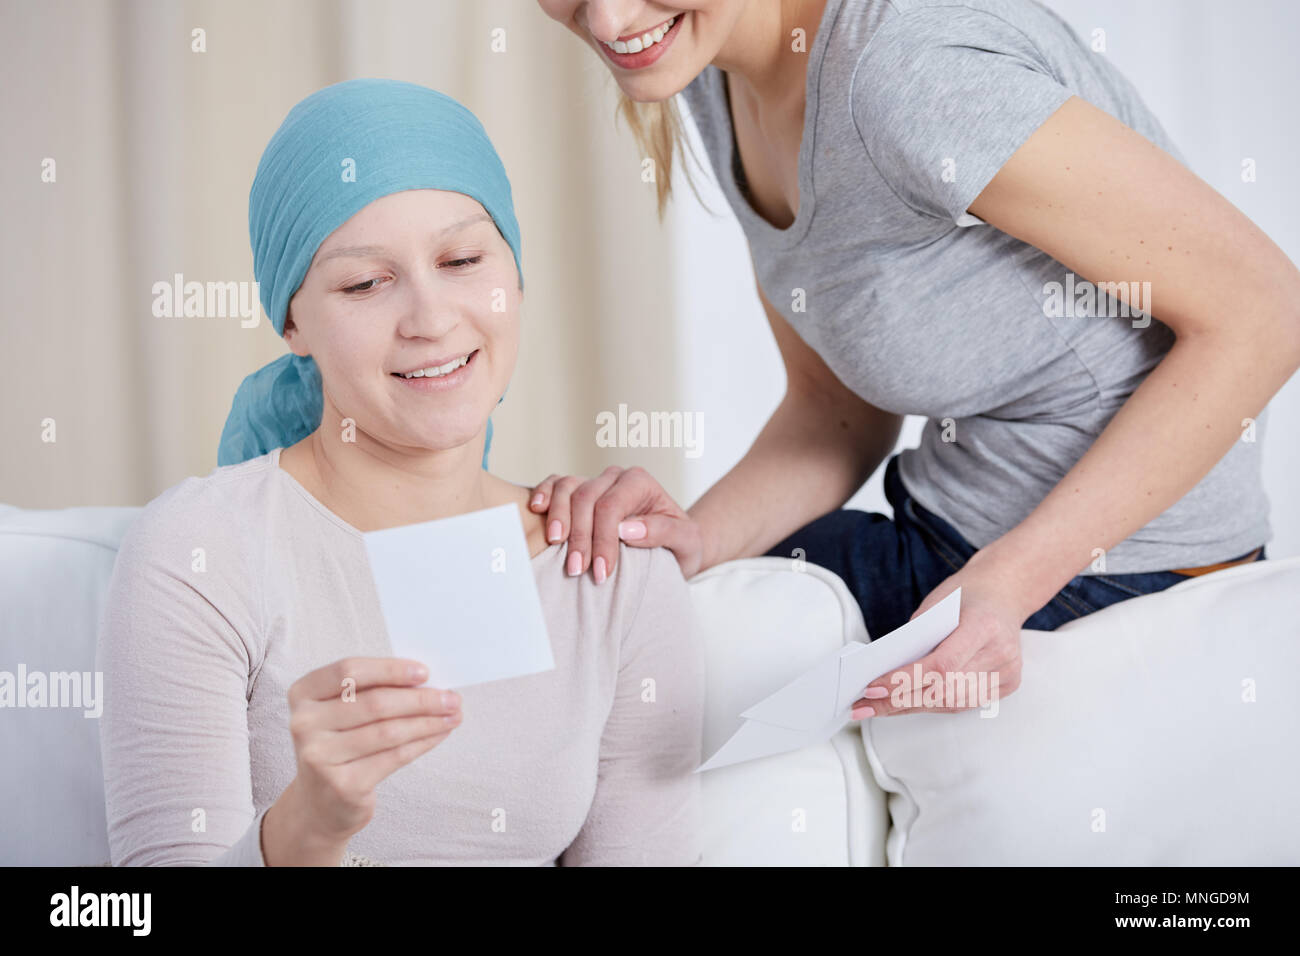 Krebs Frau mit Kopftuch, Fotos ansehen mit Schwester Stockfoto